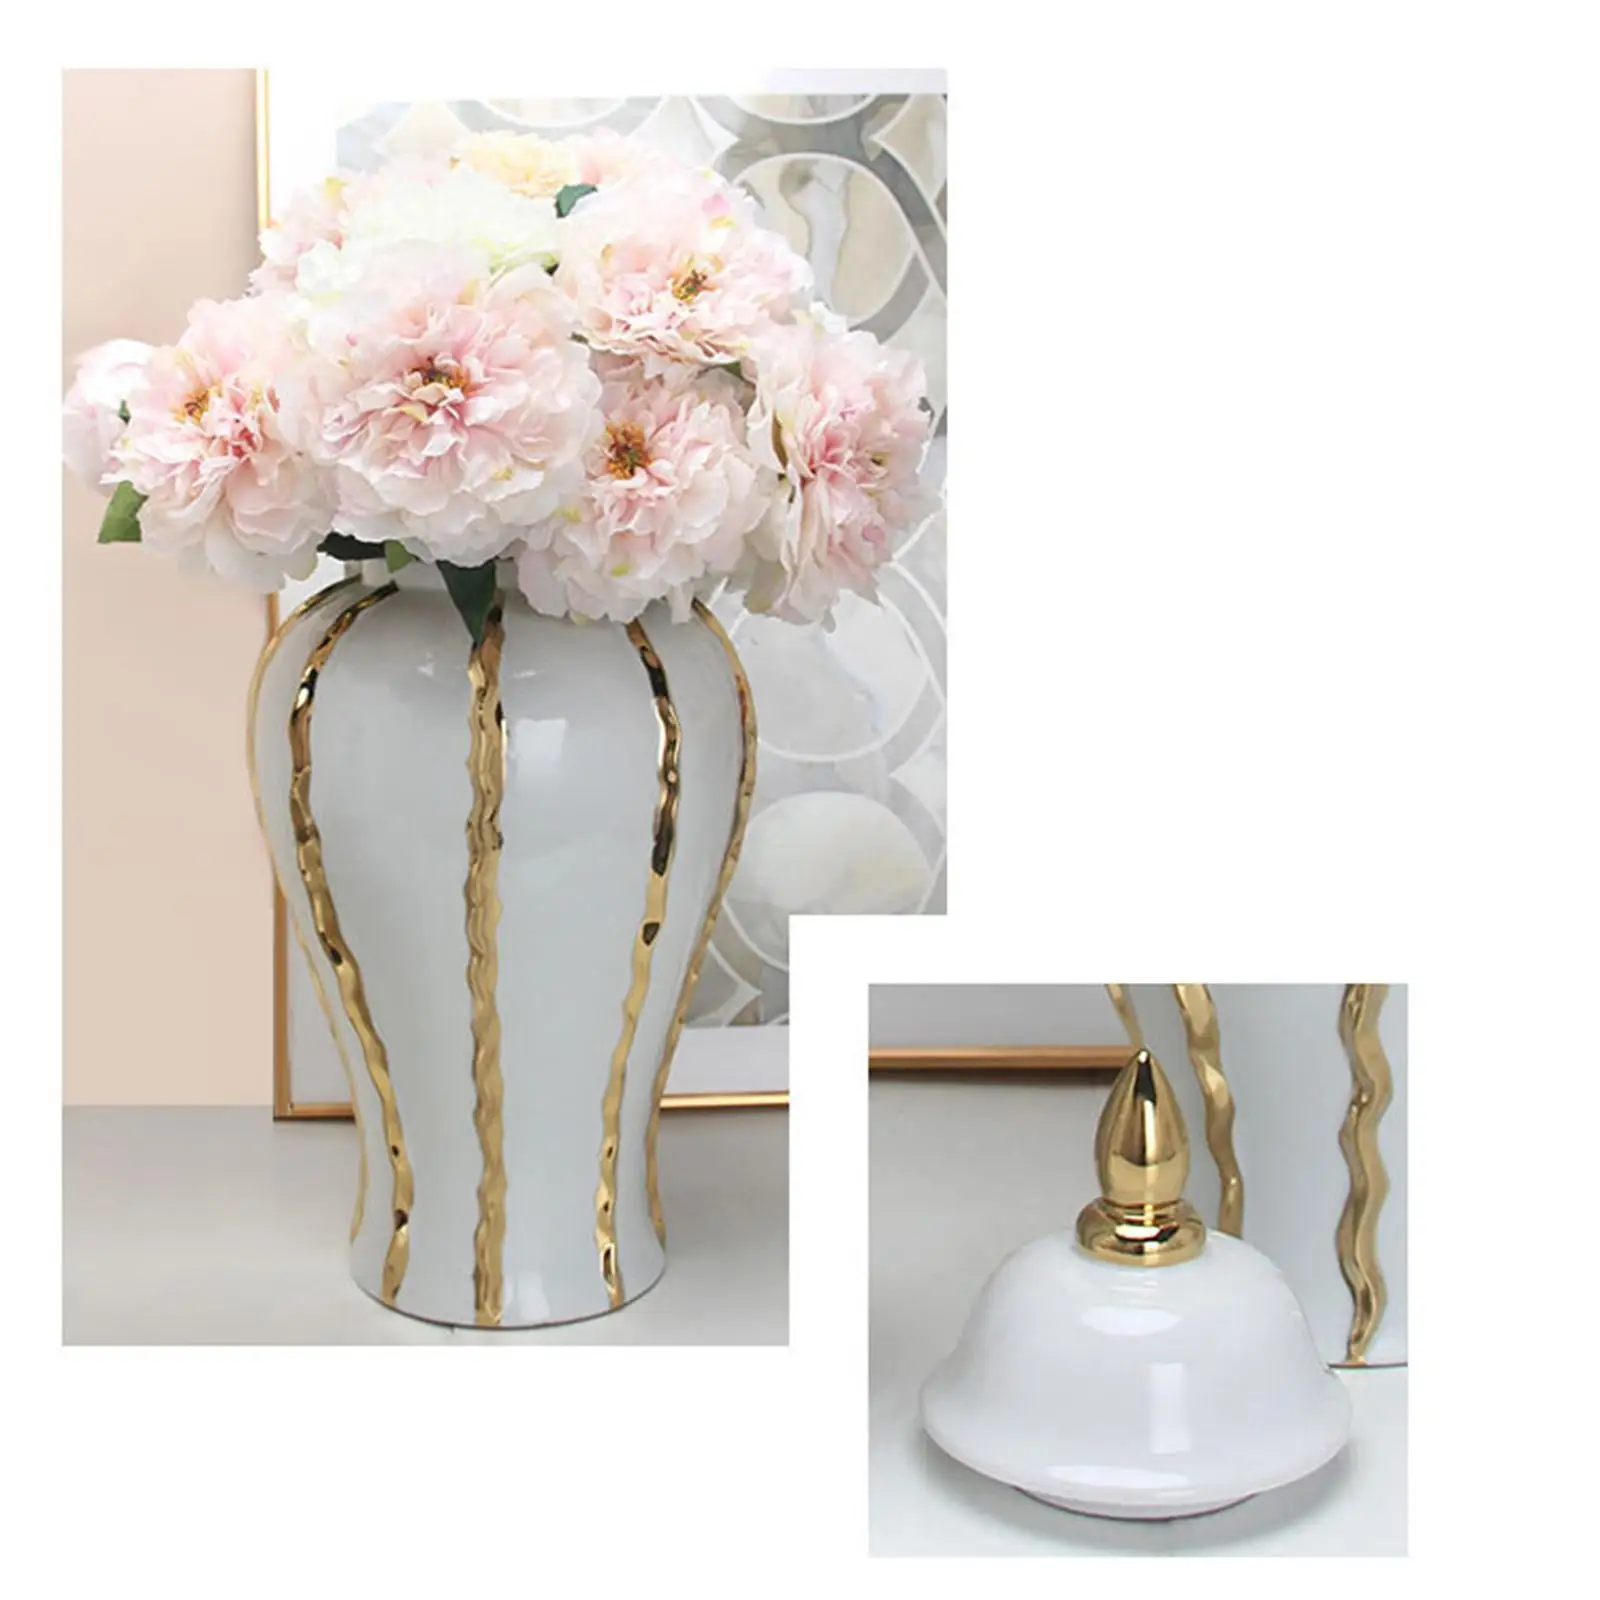 Modern Ginger Jar with Lid Handicraft Decorative Storage Light Luxury Porcelain Jar Vase for Party Desktop Decor Ornament Gift